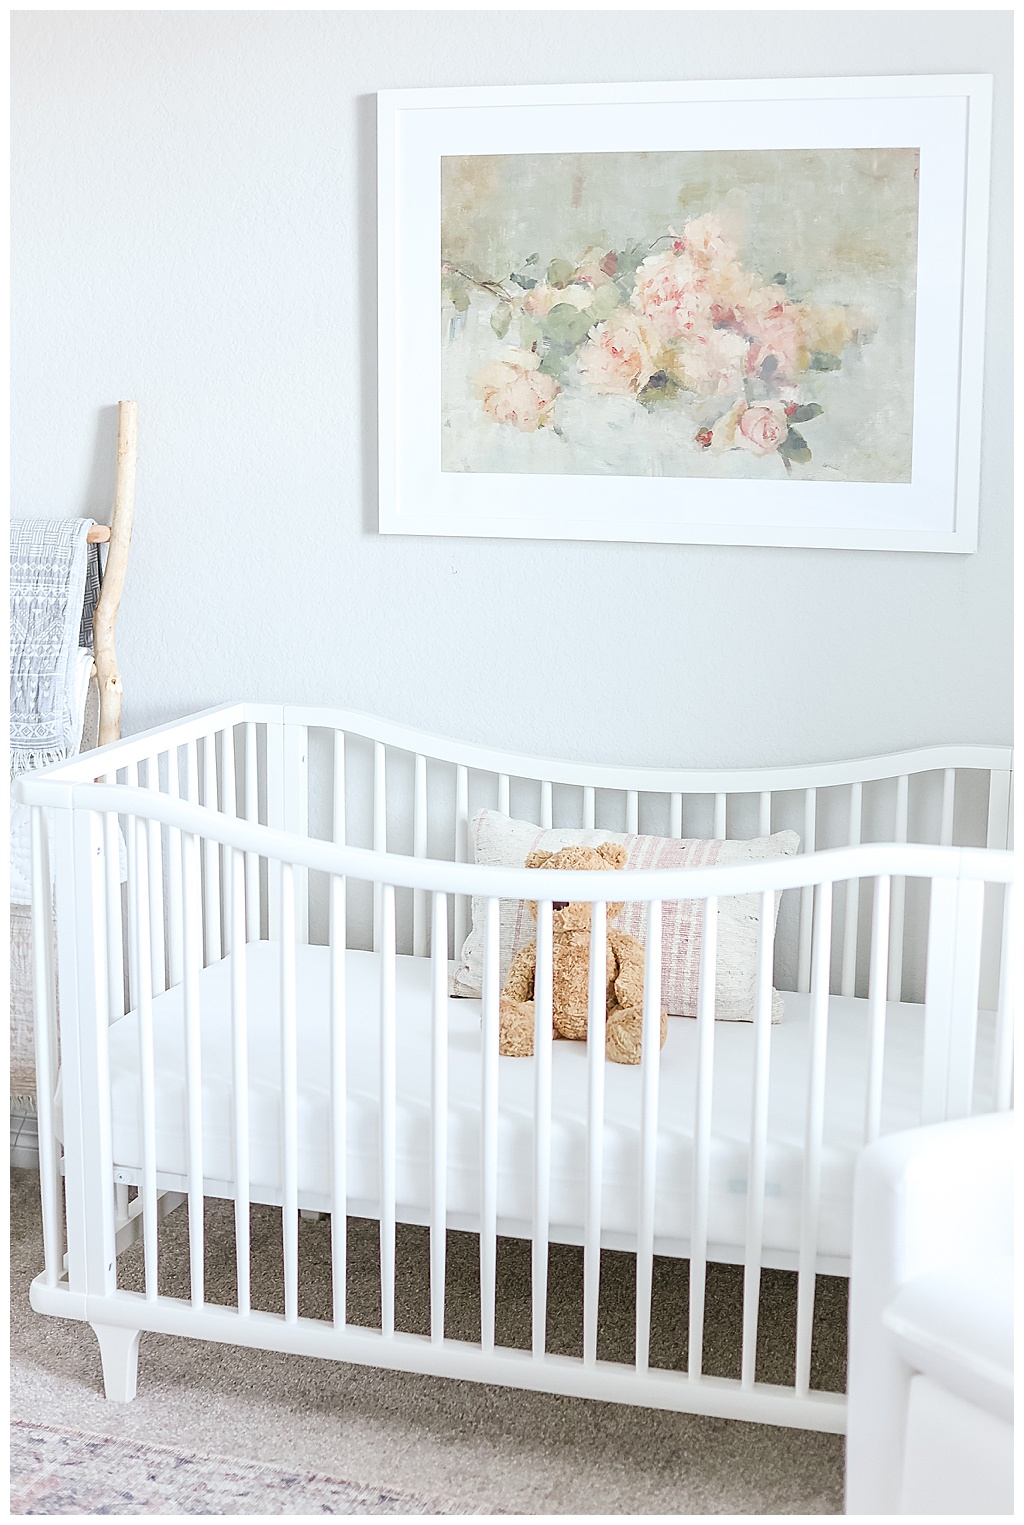 Teddy bear in baby's crib